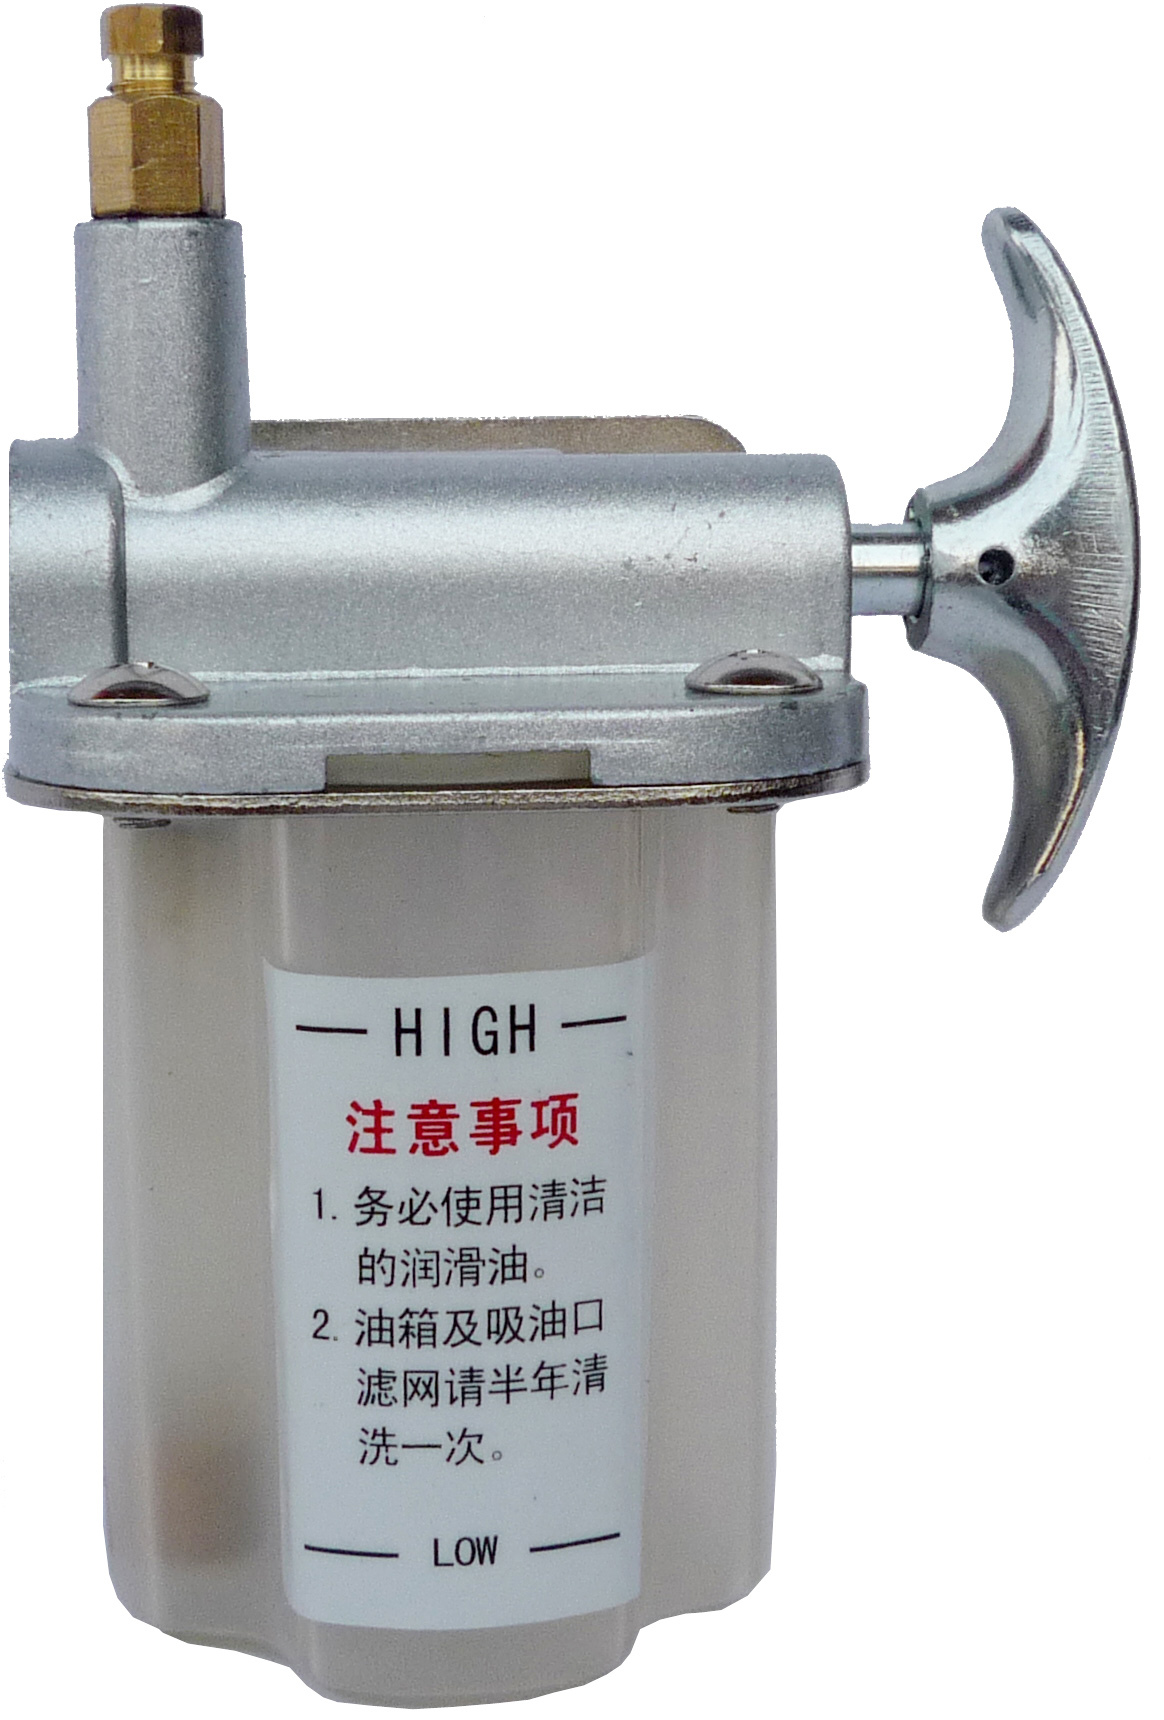 手拉油泵、HD-3手拉泵、手拉式注油器/小手拉泵